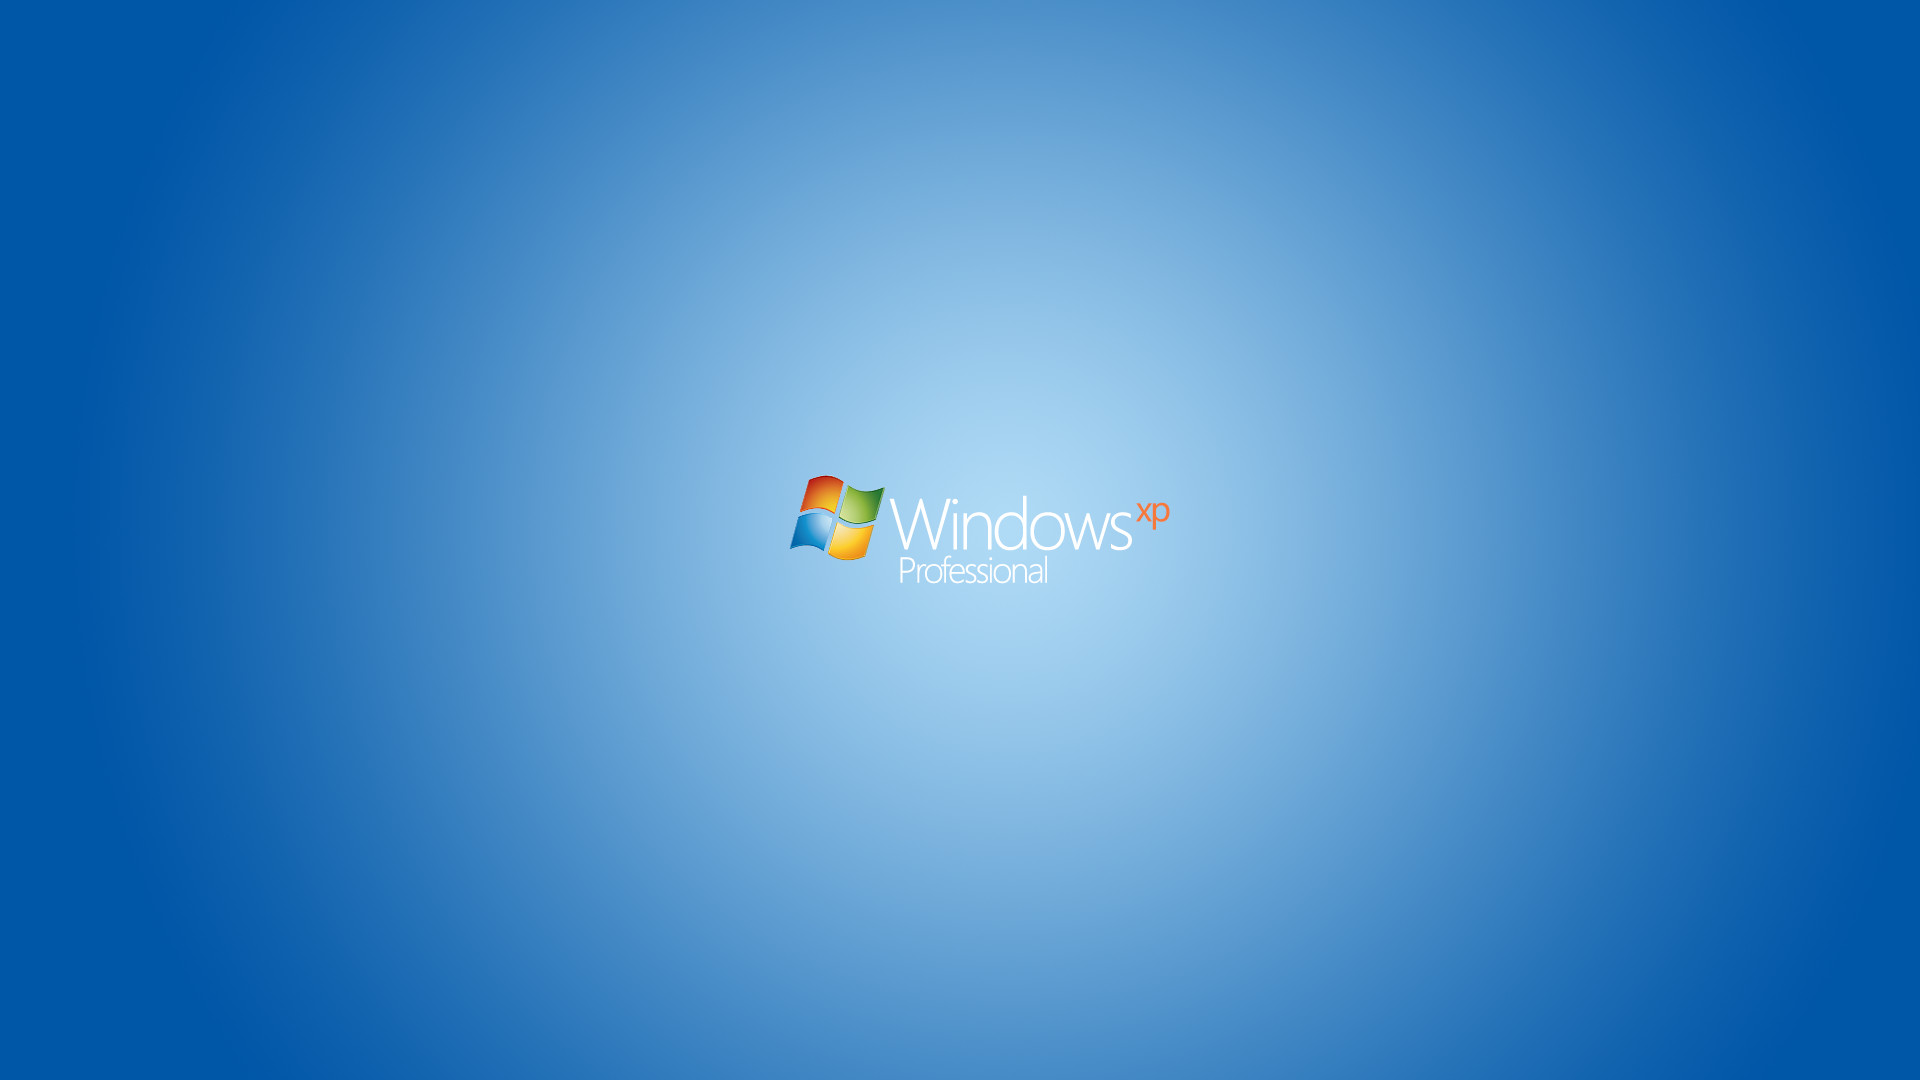 1920x1080 1280x800 Windows 7 Professional F by St-Jim on DeviantArt